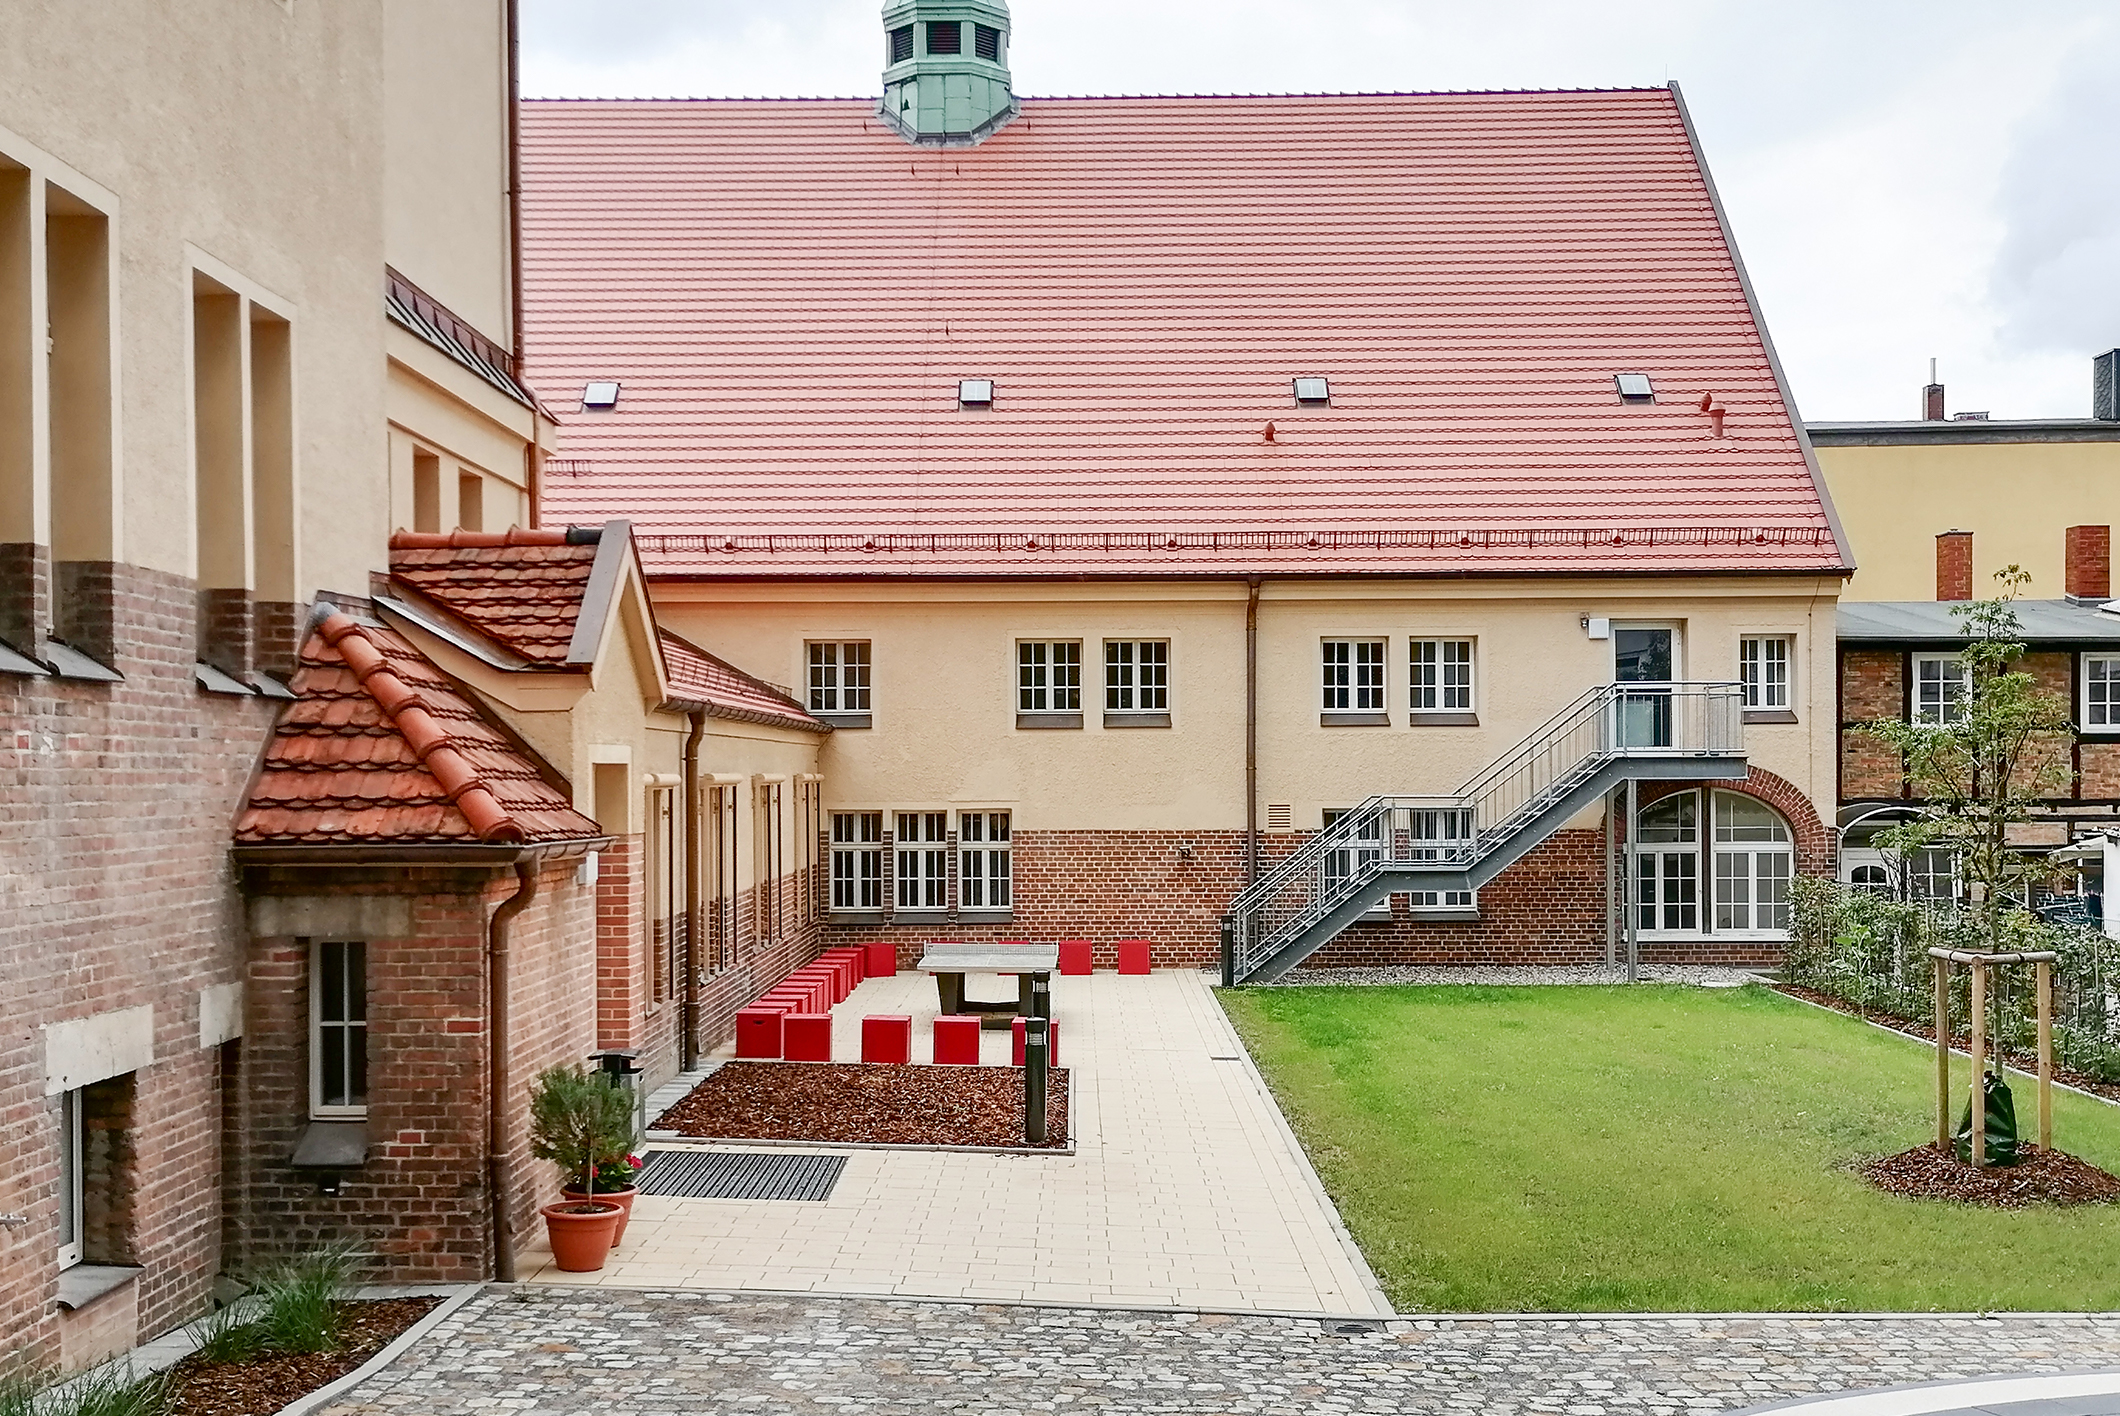 Einladend und mit neu gestaltetem Schulhof zeigt sich die neue Erich-Weinert-Schule